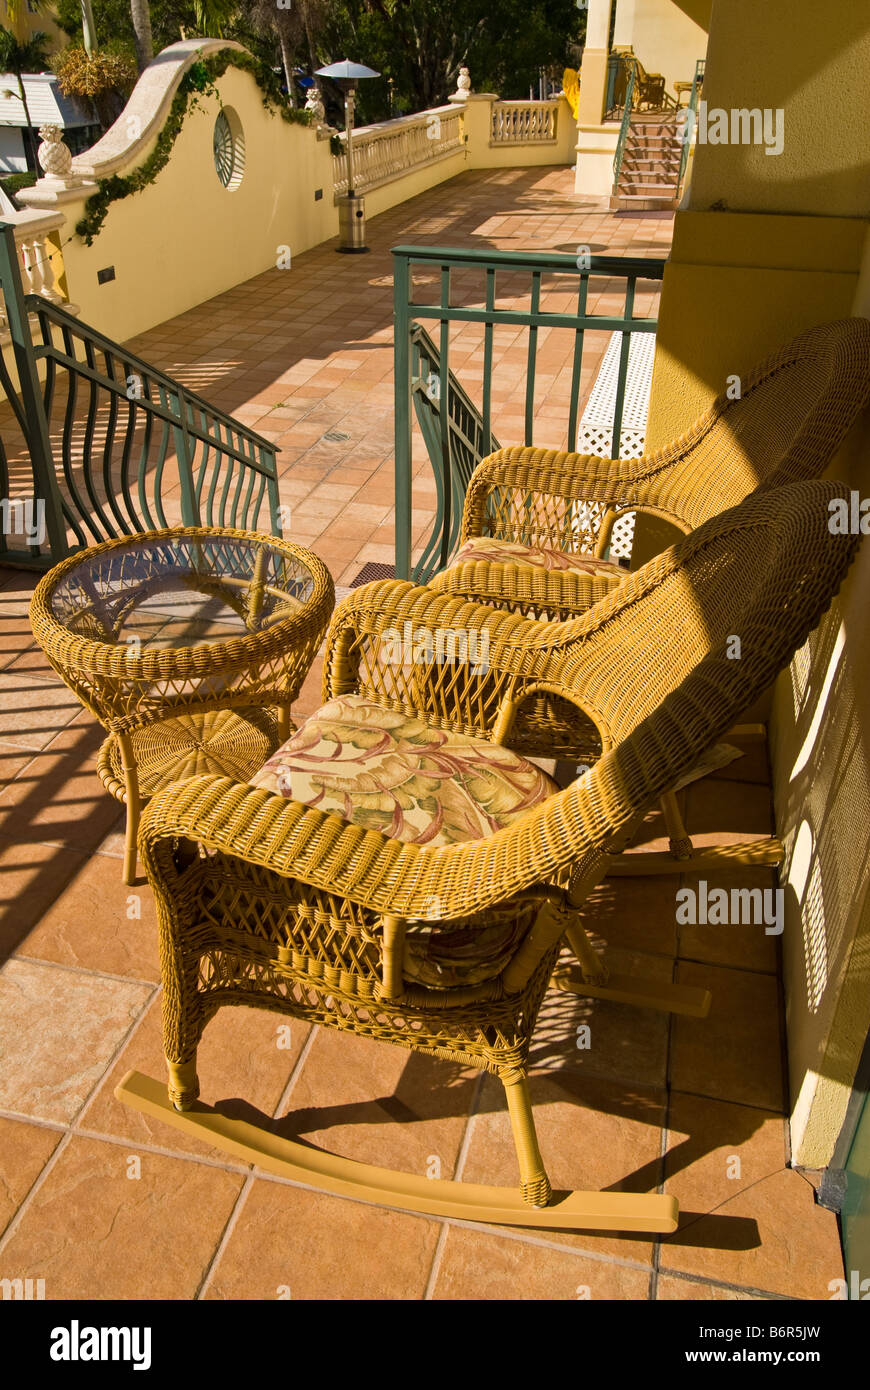 Chaises en osier Inn on Fifth terrasse balcon véranda vieux Naples fl Floride hôtel populaires Banque D'Images